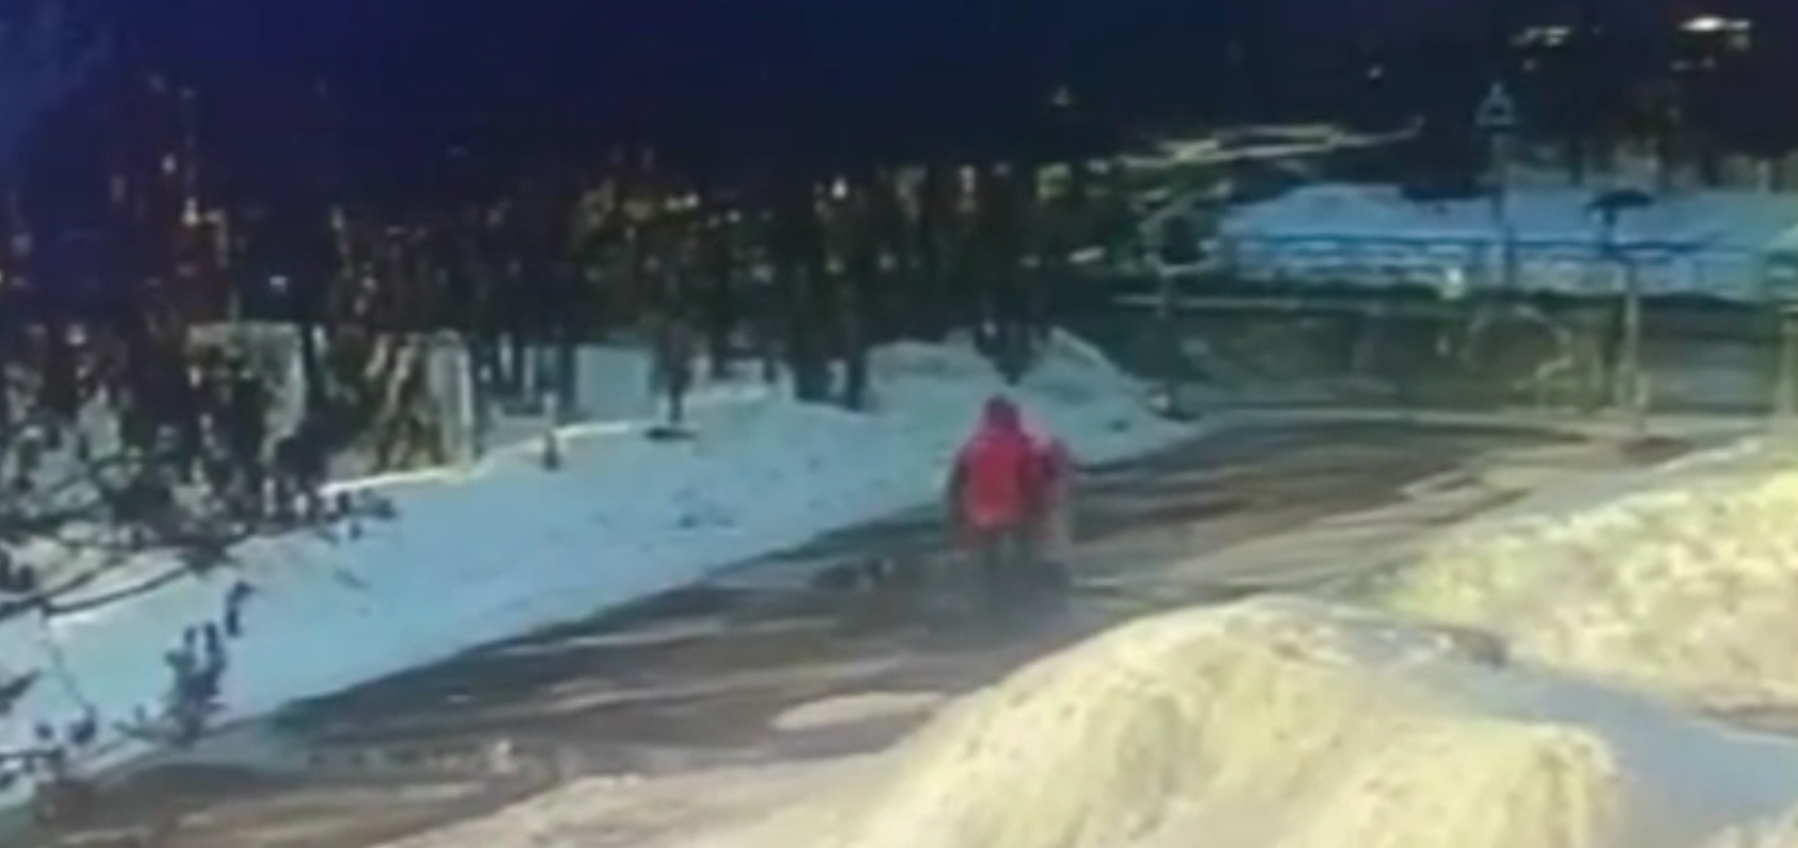 В Кирове мужчина схватил школьницу и потащил за собой: видео